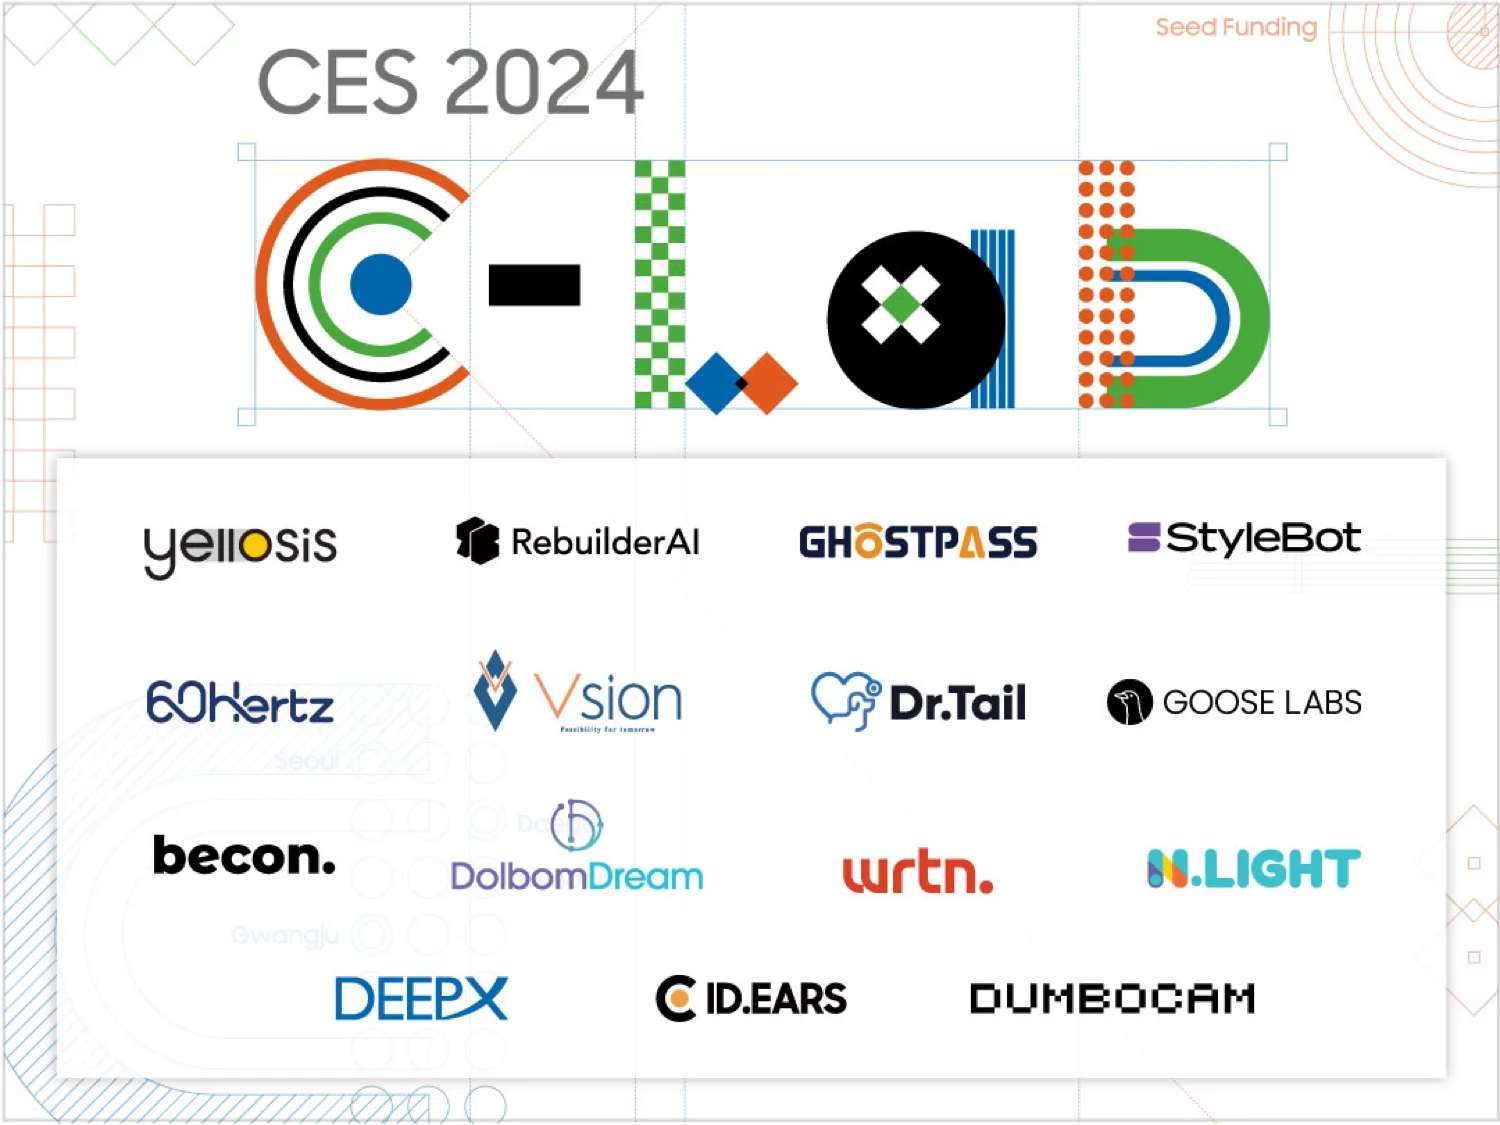 Samsung exhibirá más startups C-Lab que nunca en CES 2024